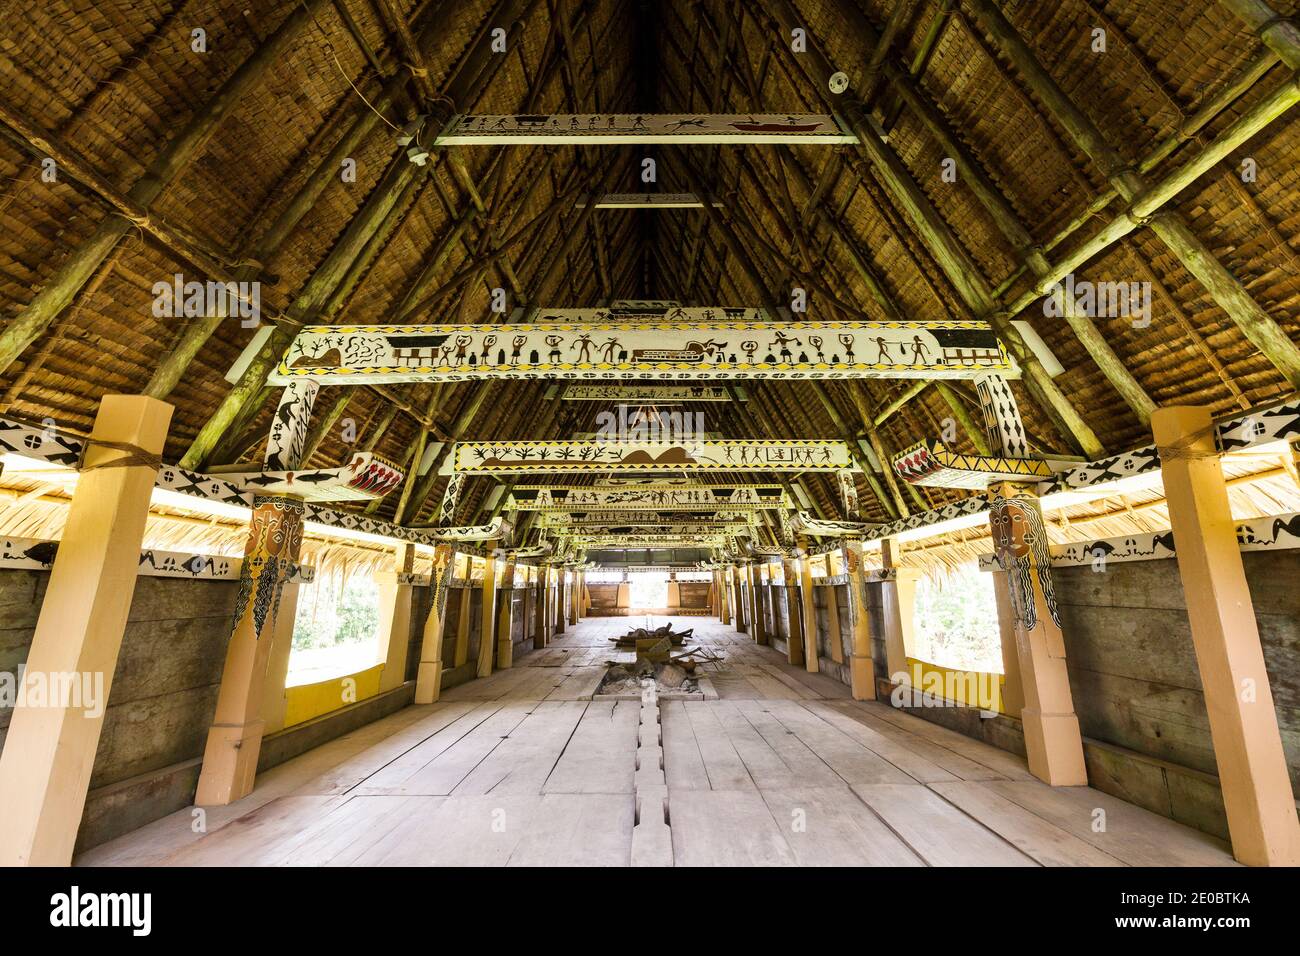 Intérieur de Bai Rekeai, Bai est maison traditionnelle en bois, maison de rencontre pour hommes, Aimeliik, île de Babeldaob, Palau, Micronésie, Océanie Banque D'Images